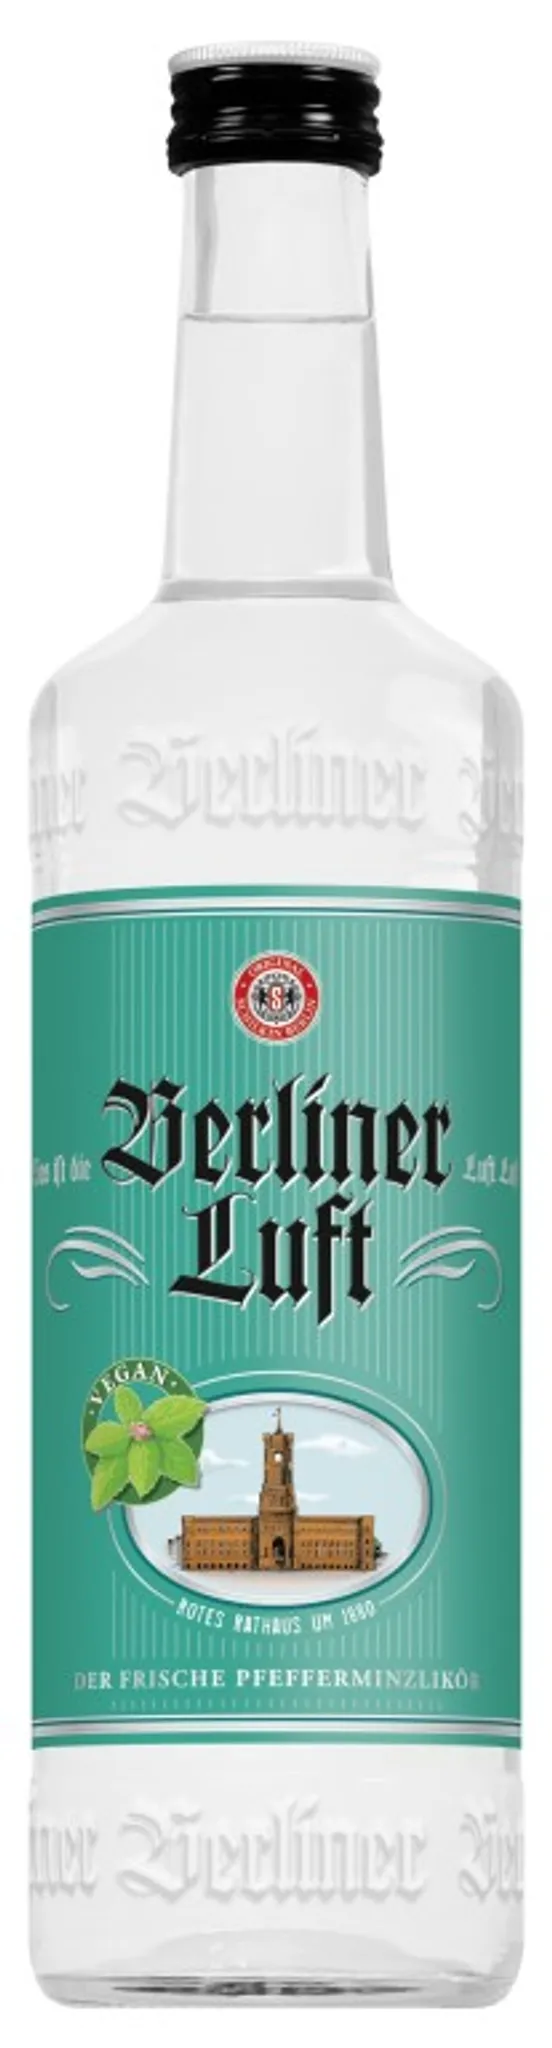 % vol 18 | Luft Berliner Pfefferminzlikör